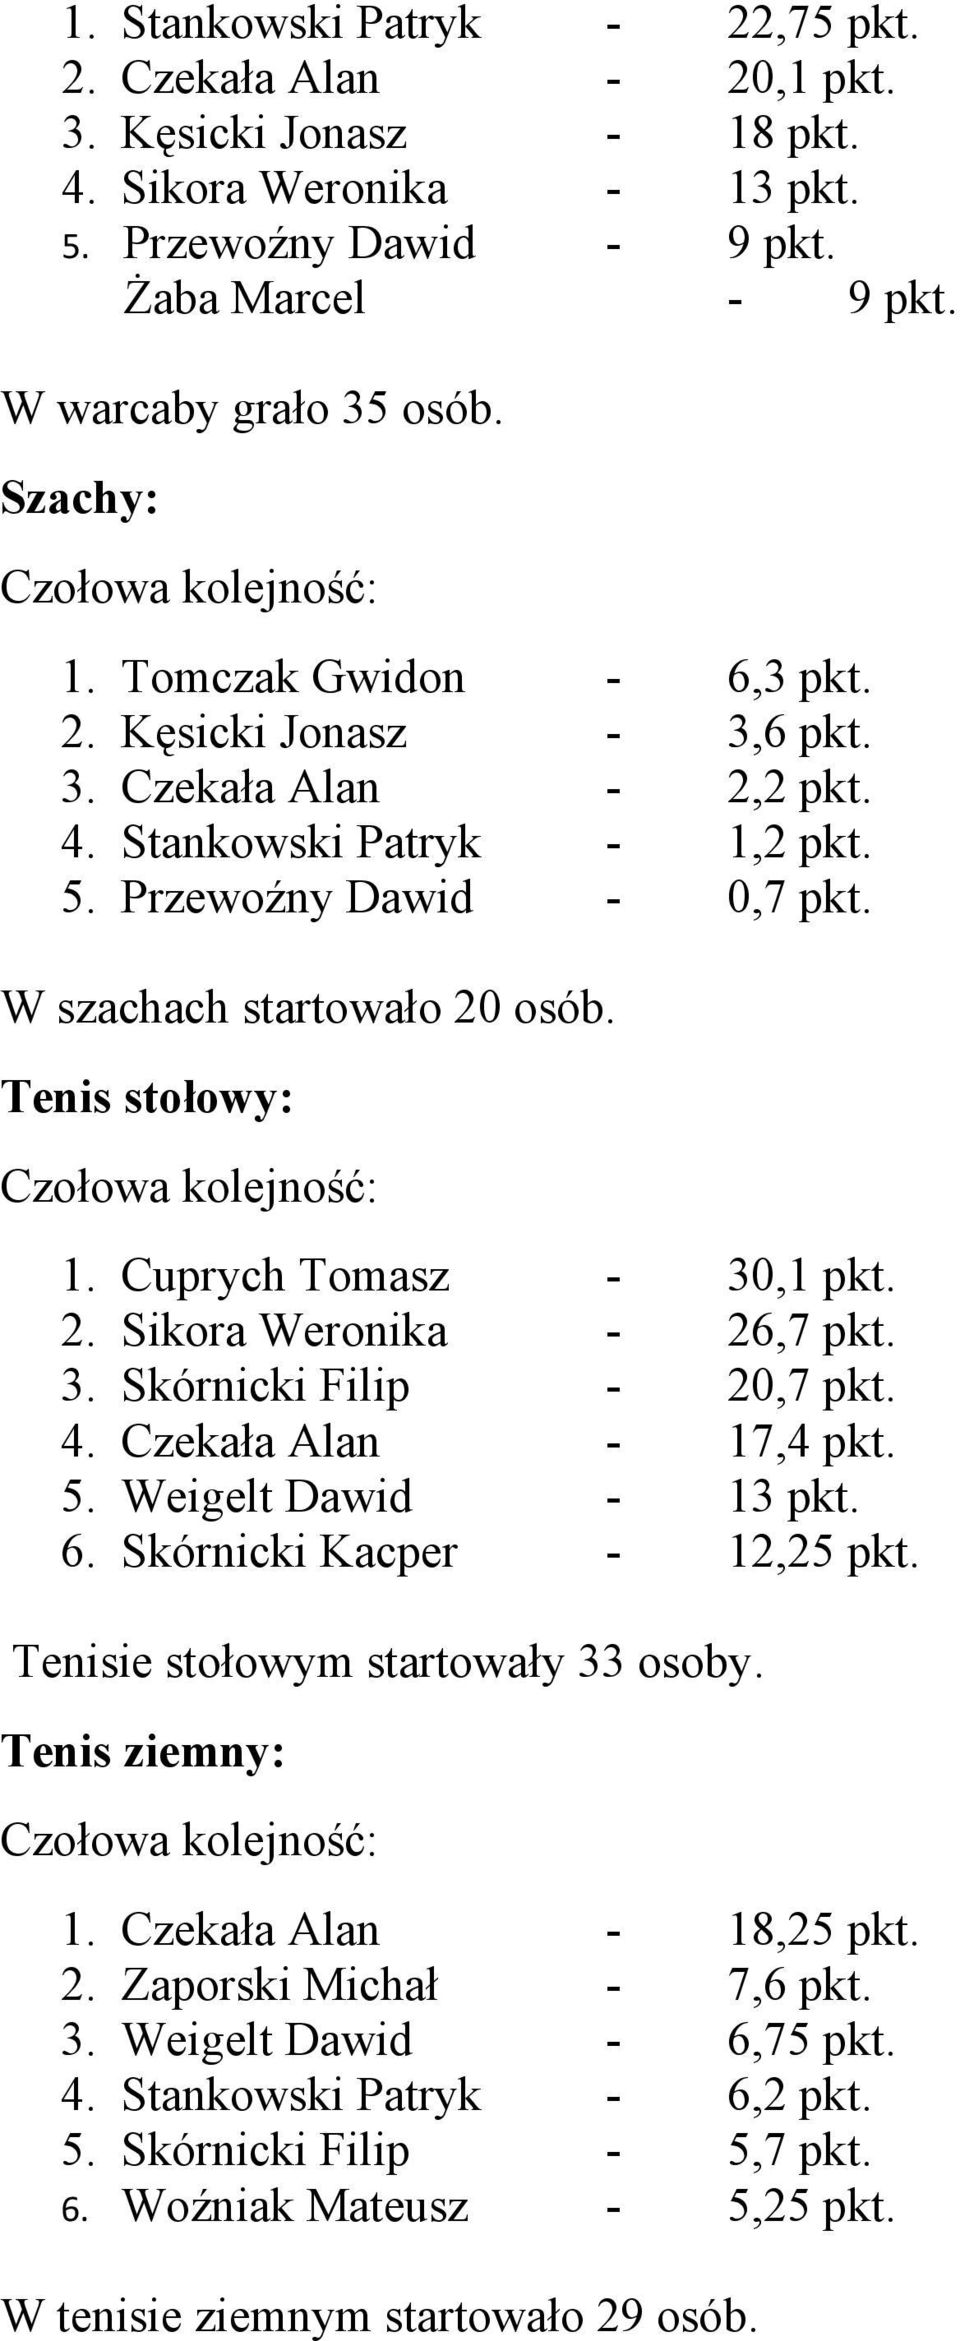 Cuprych Tomasz Sikora Weronika Skórnicki Filip Czekała Alan Weigelt Dawid Skórnicki Kacper 30,1 pkt. 26,7 pkt. 20,7 pkt. 17,4 pkt. 13 pkt. 12,25 pkt.